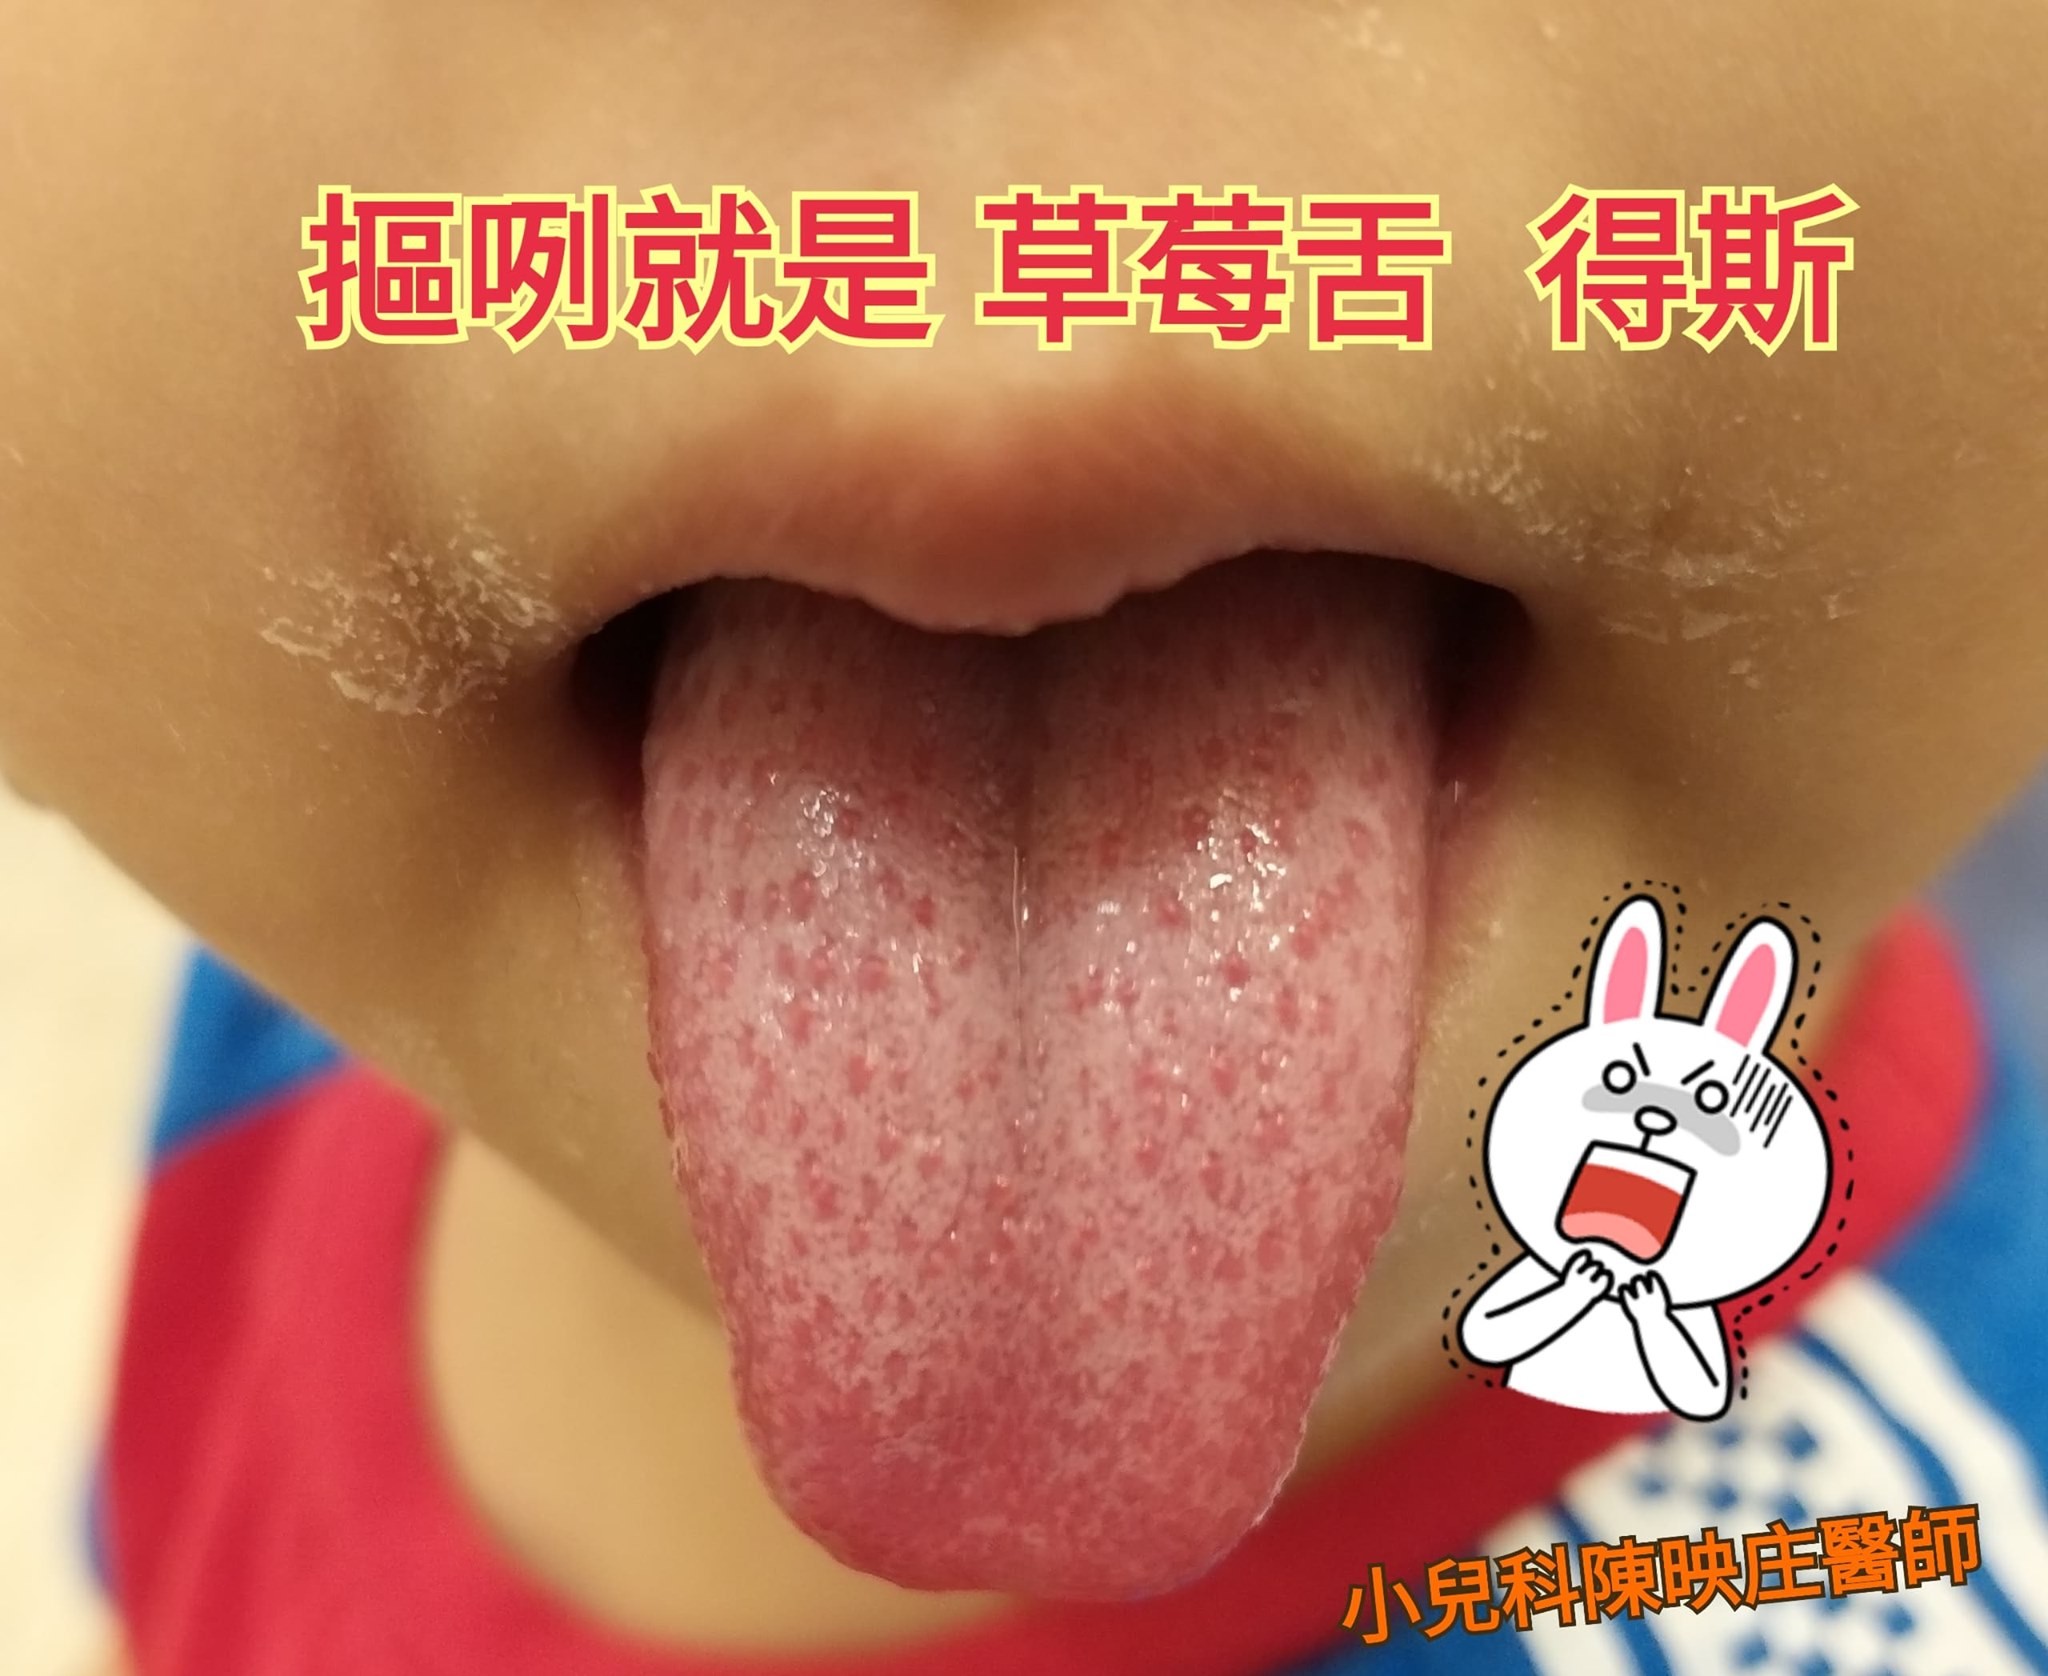 ettoday健康云  记者谢承恩/综合报导 遇到小孩发烧,张口又见「草莓舌